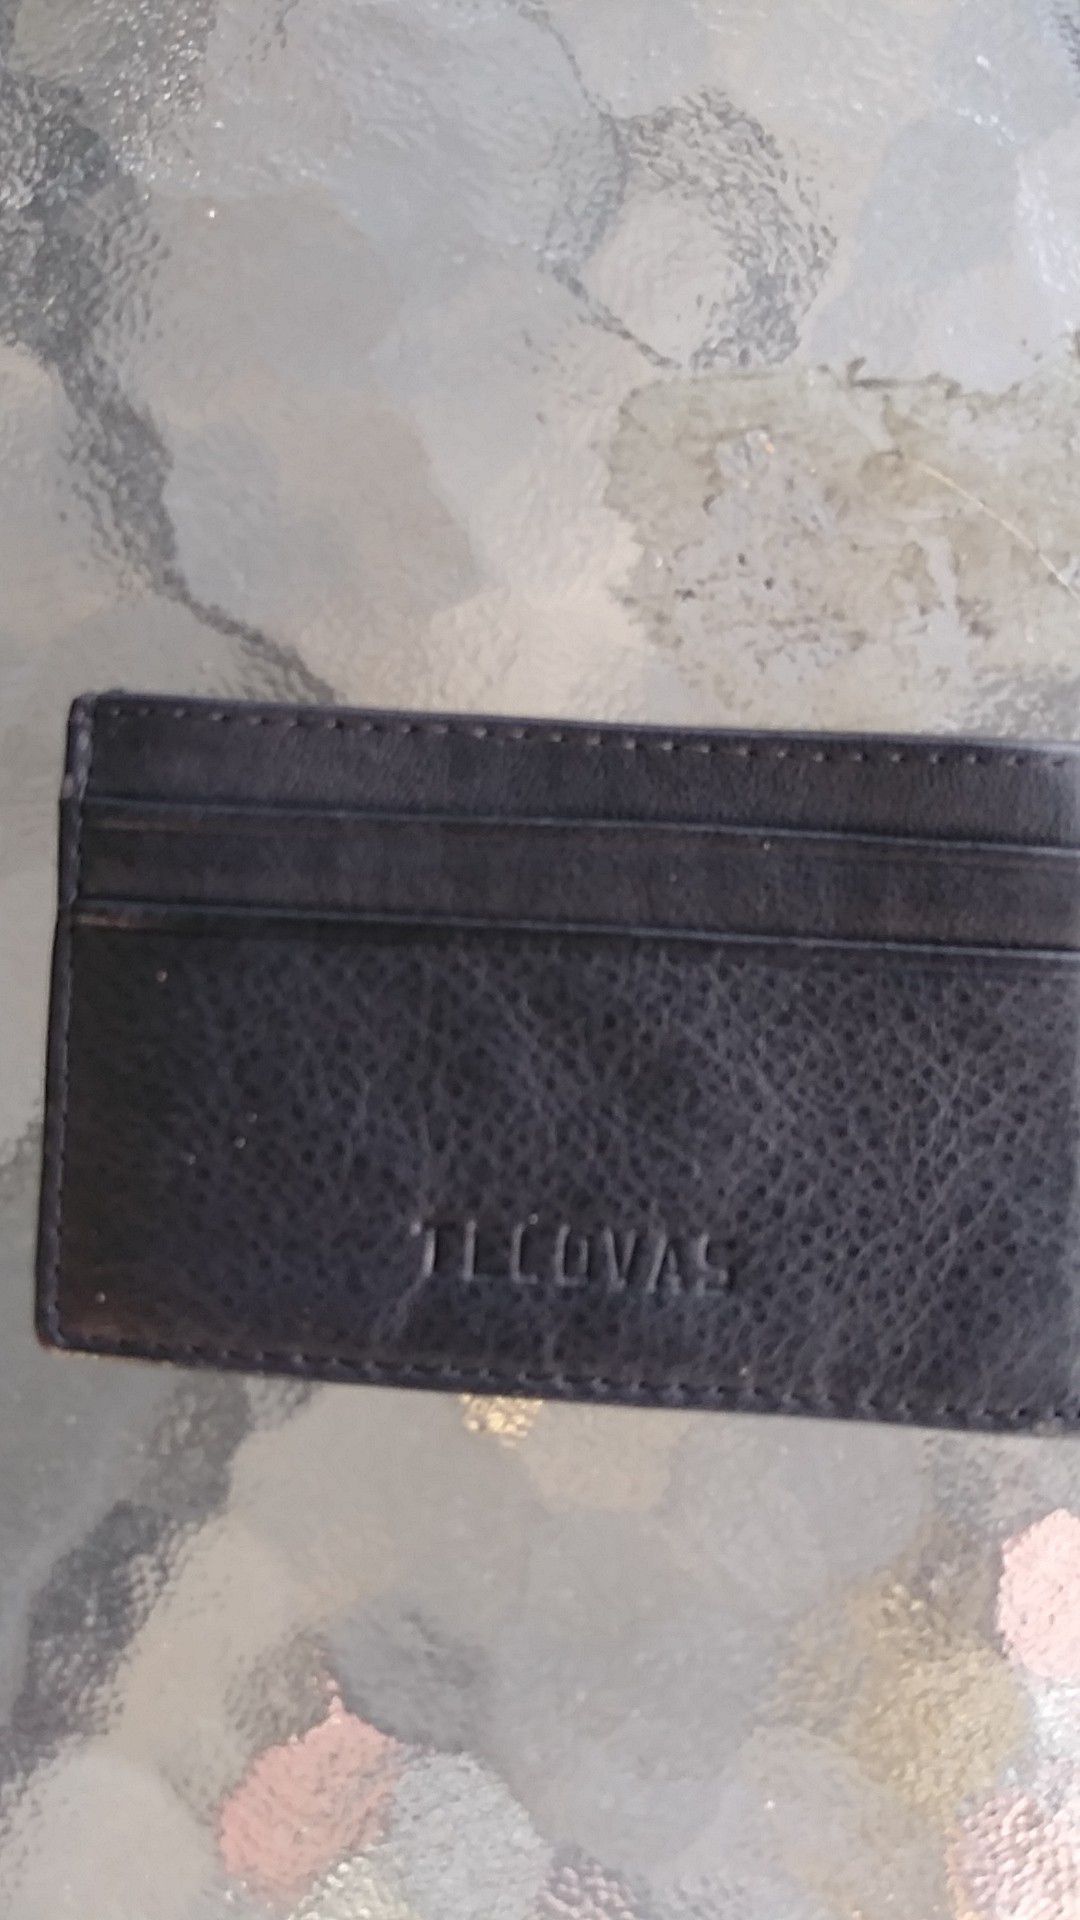 Tacovas wallet